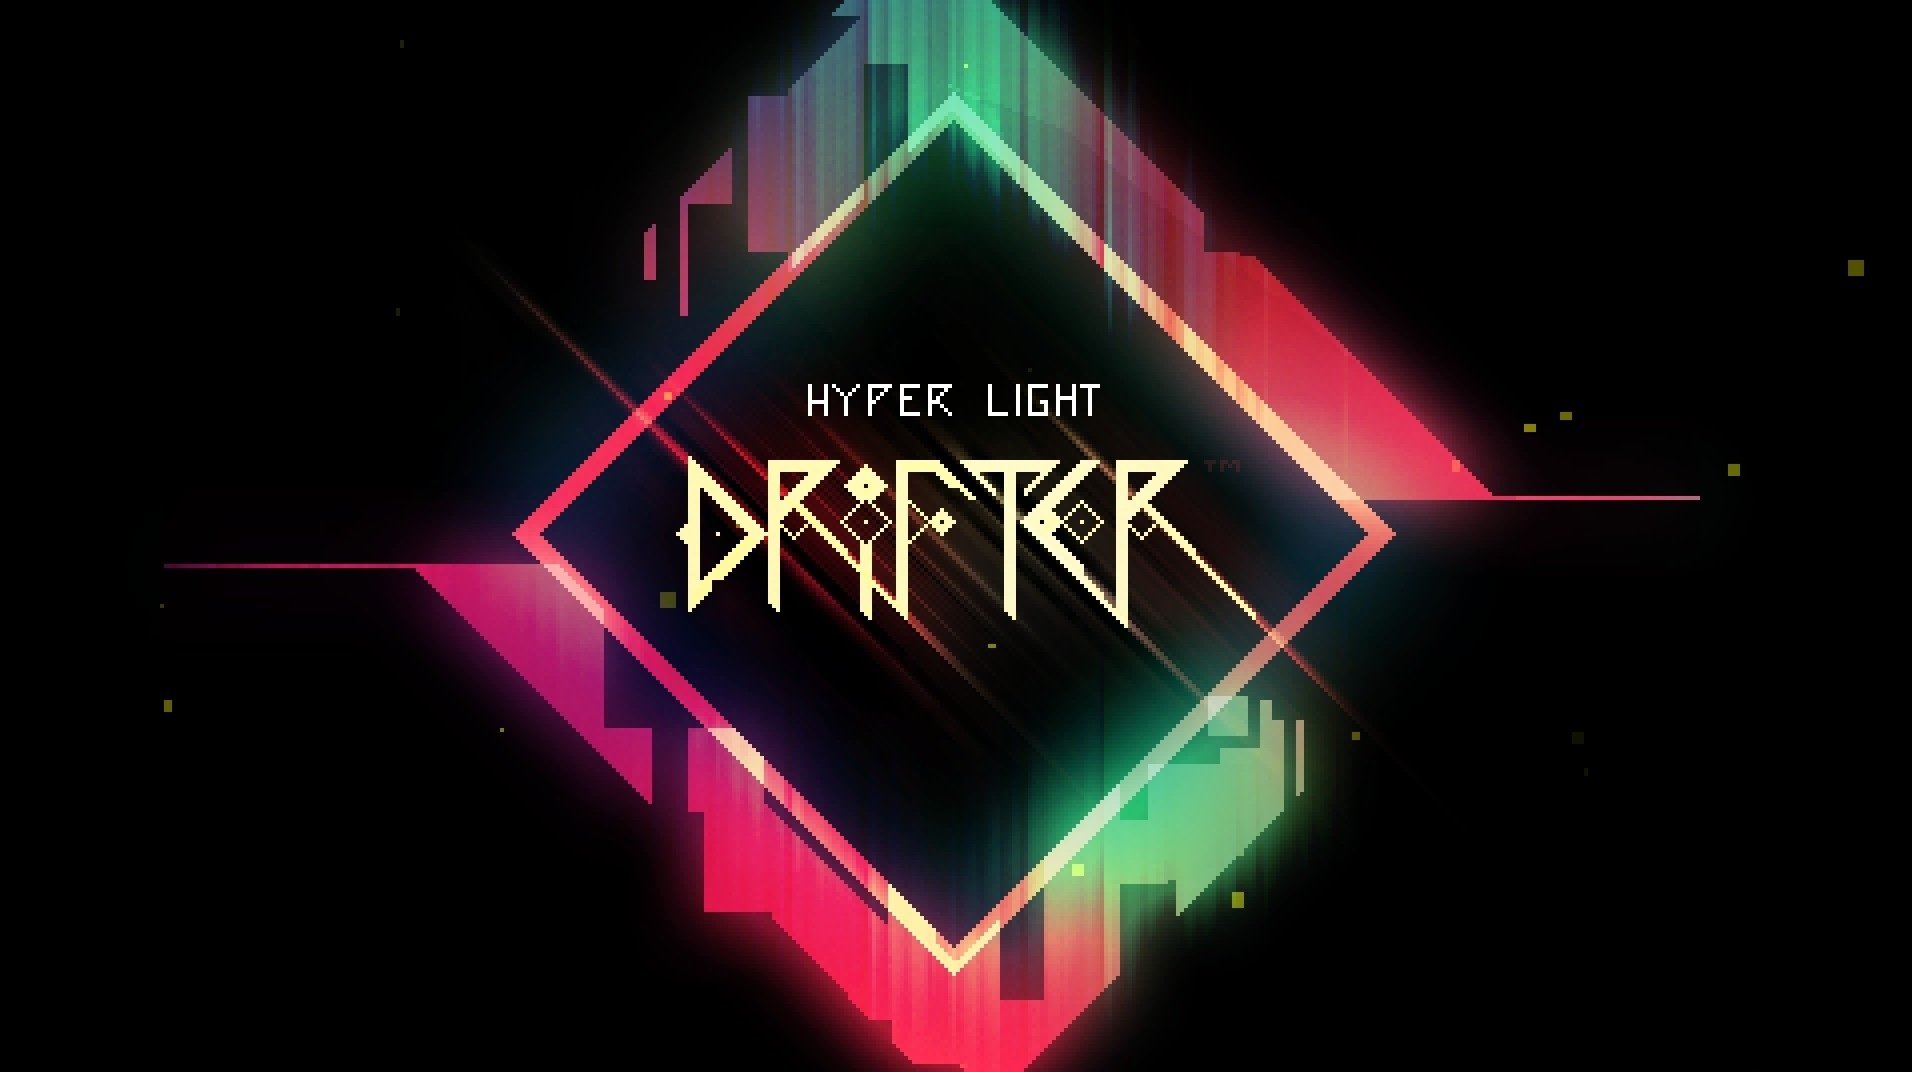 hyper light drifter updates